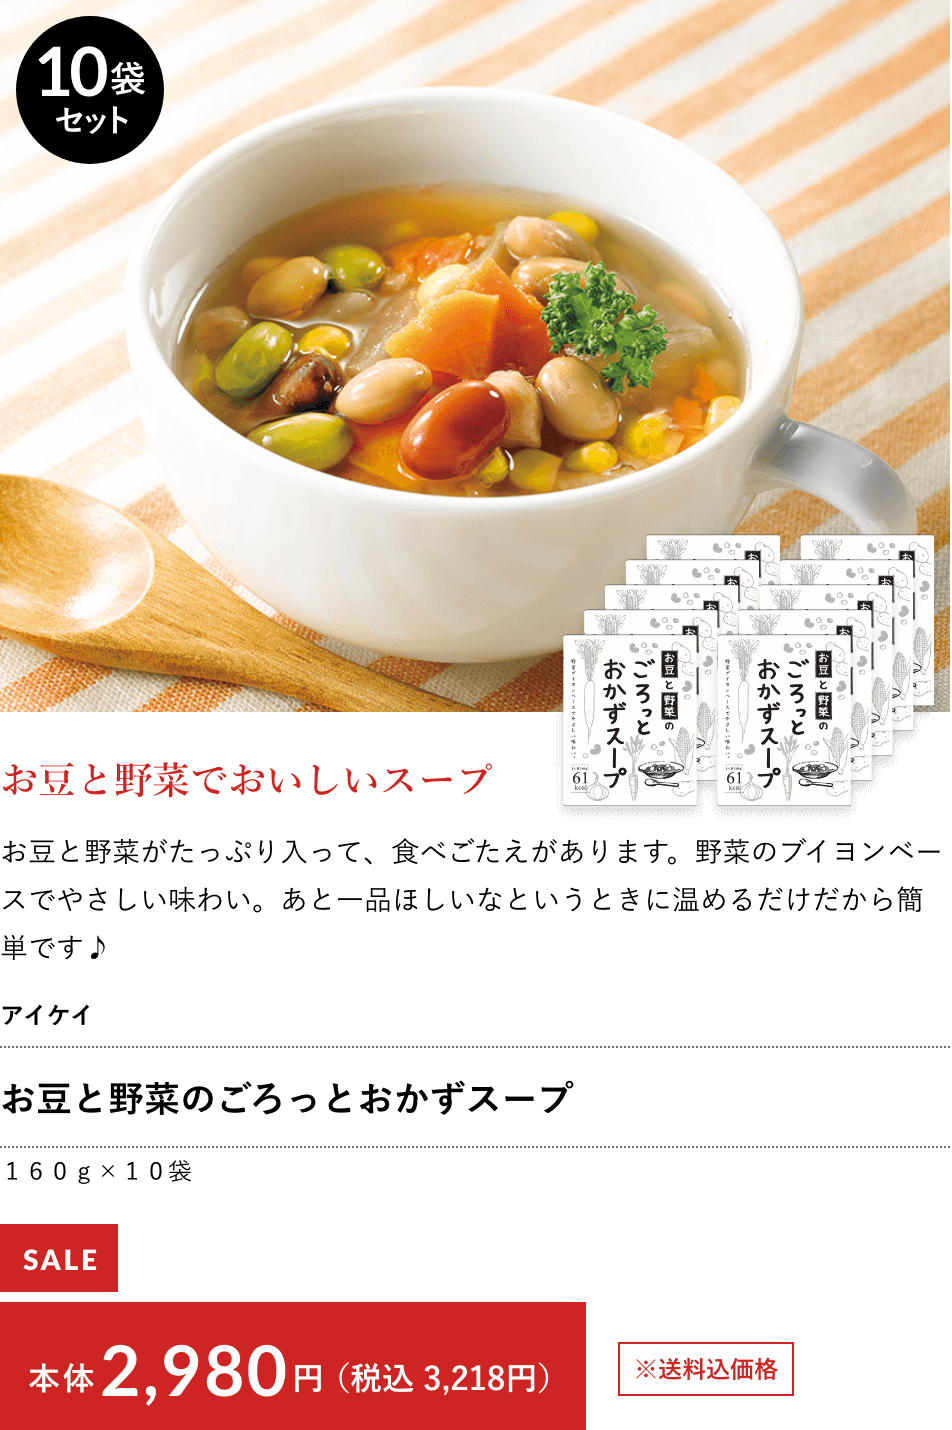 お豆と野菜のごろっとおかずスープ